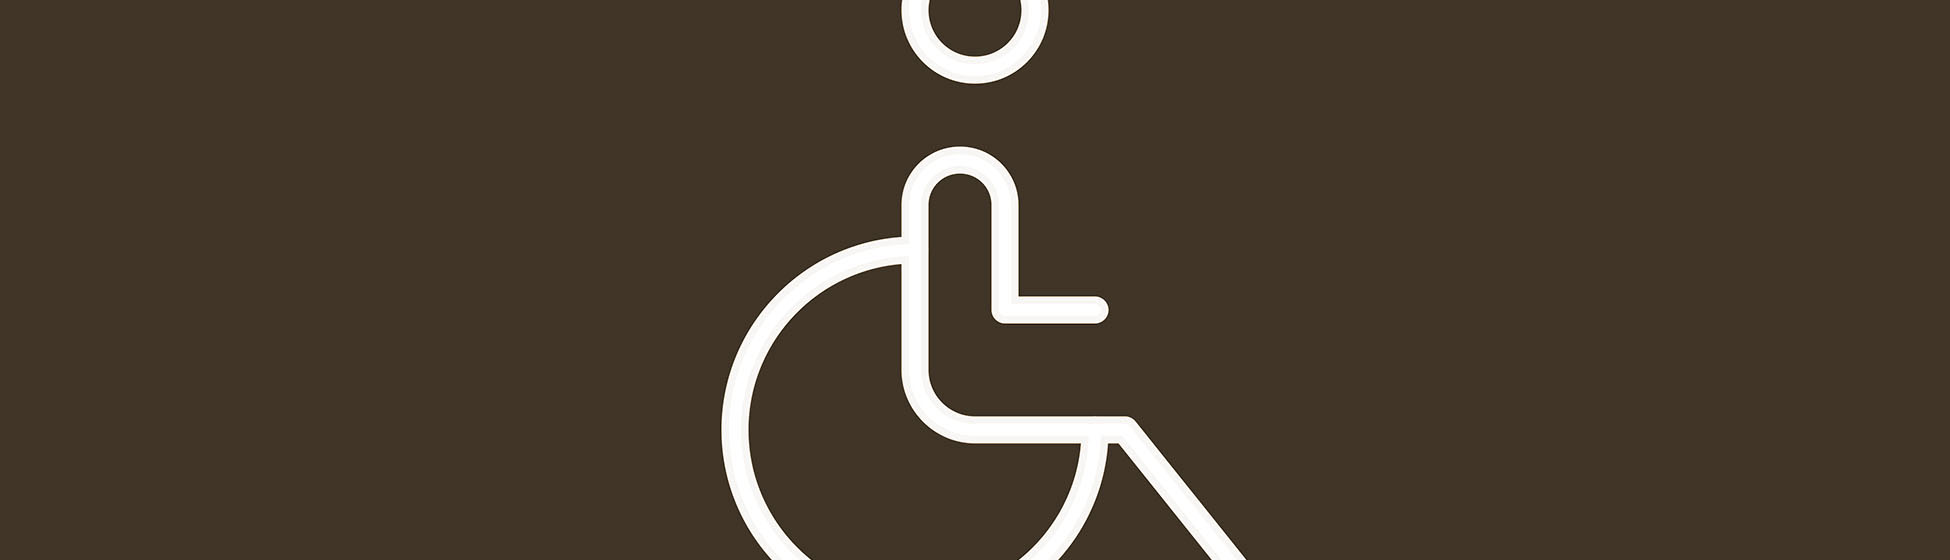 Accessibilité pmr